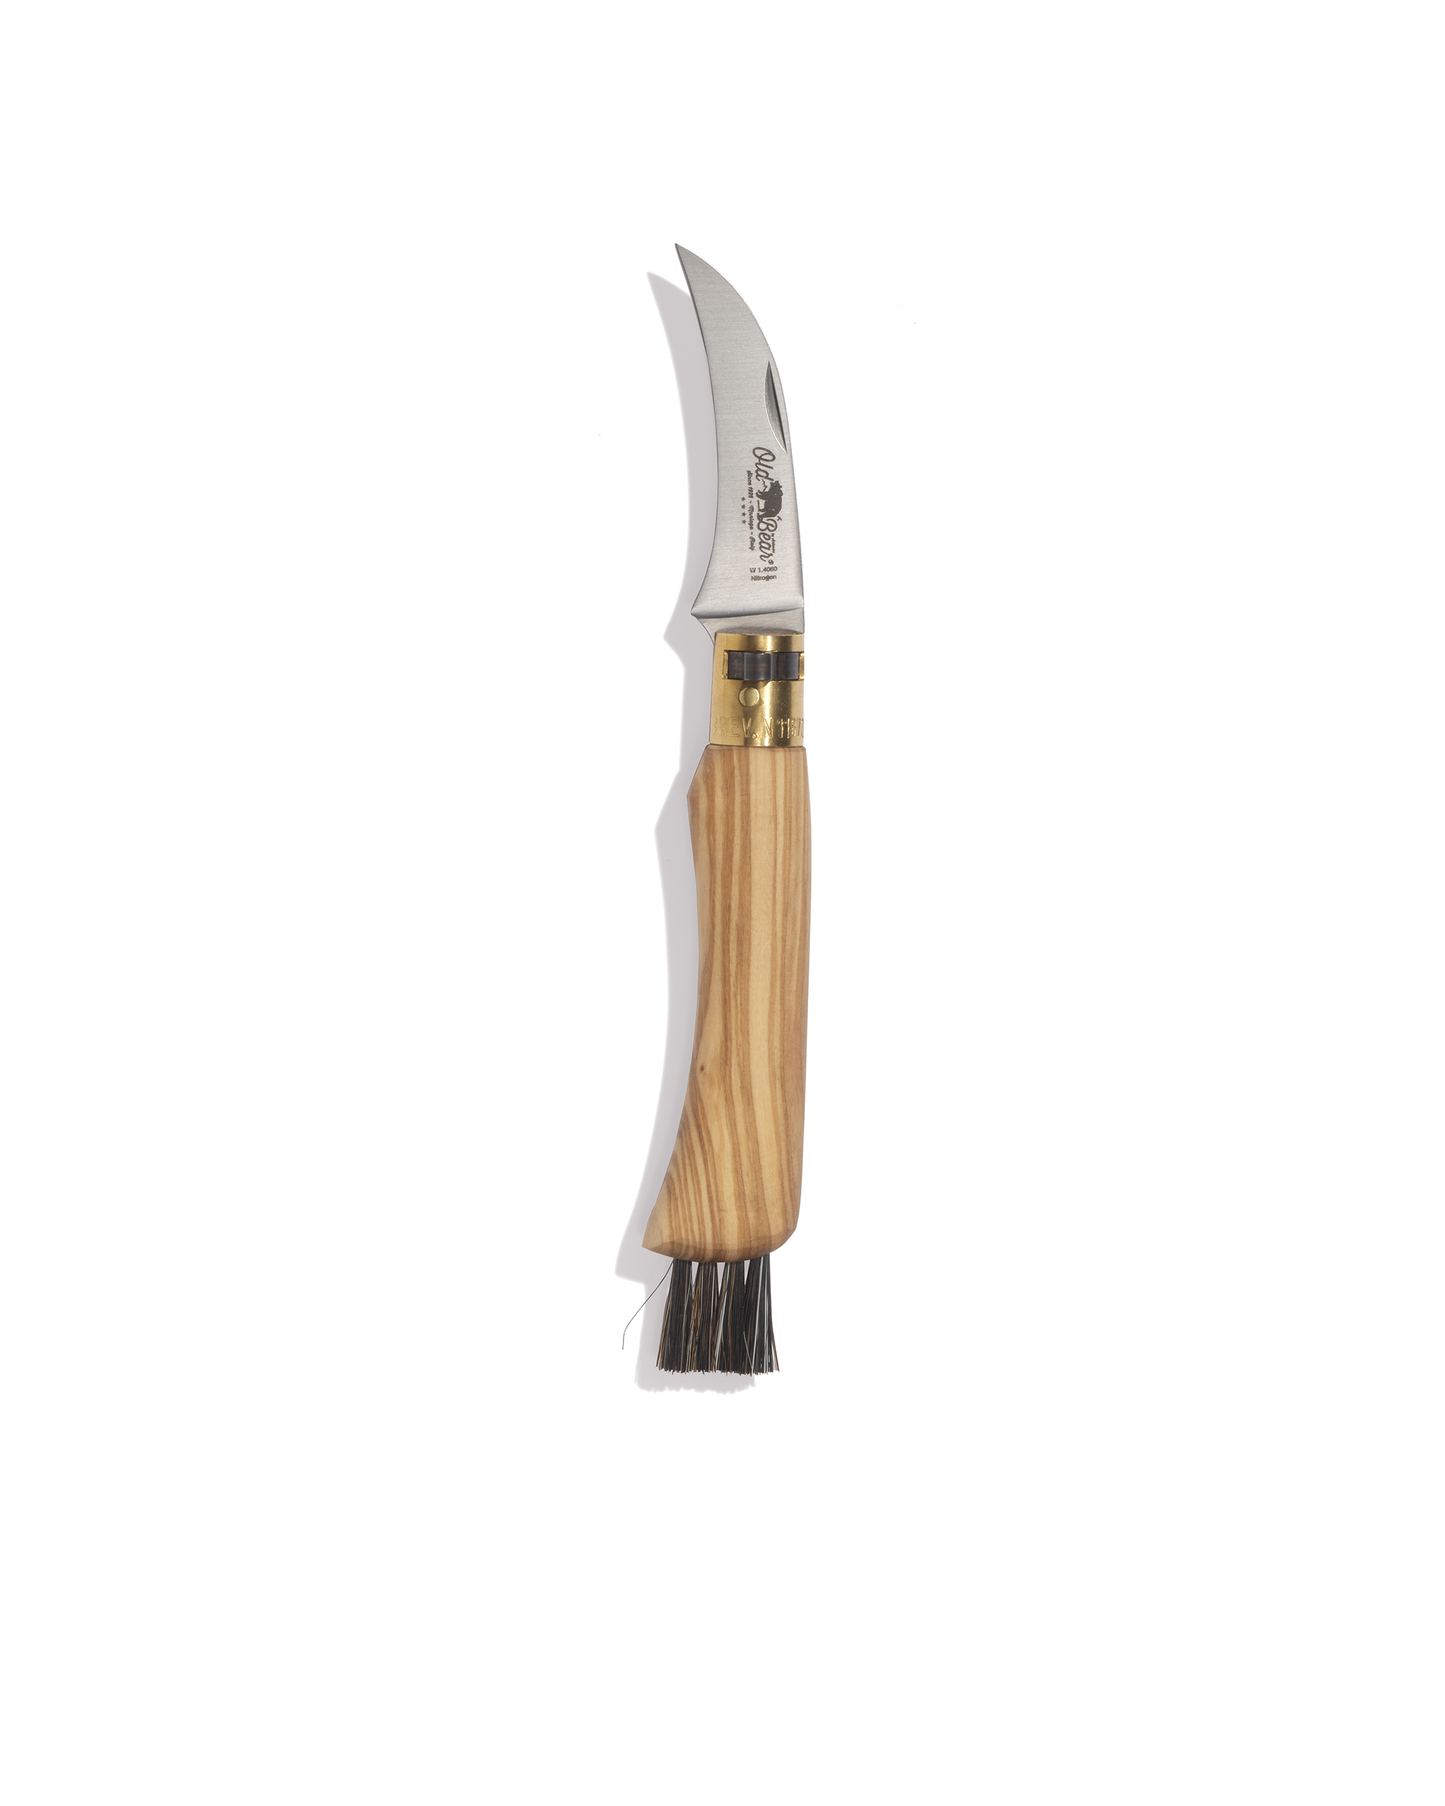 Old Bear olive wood mushroom knife